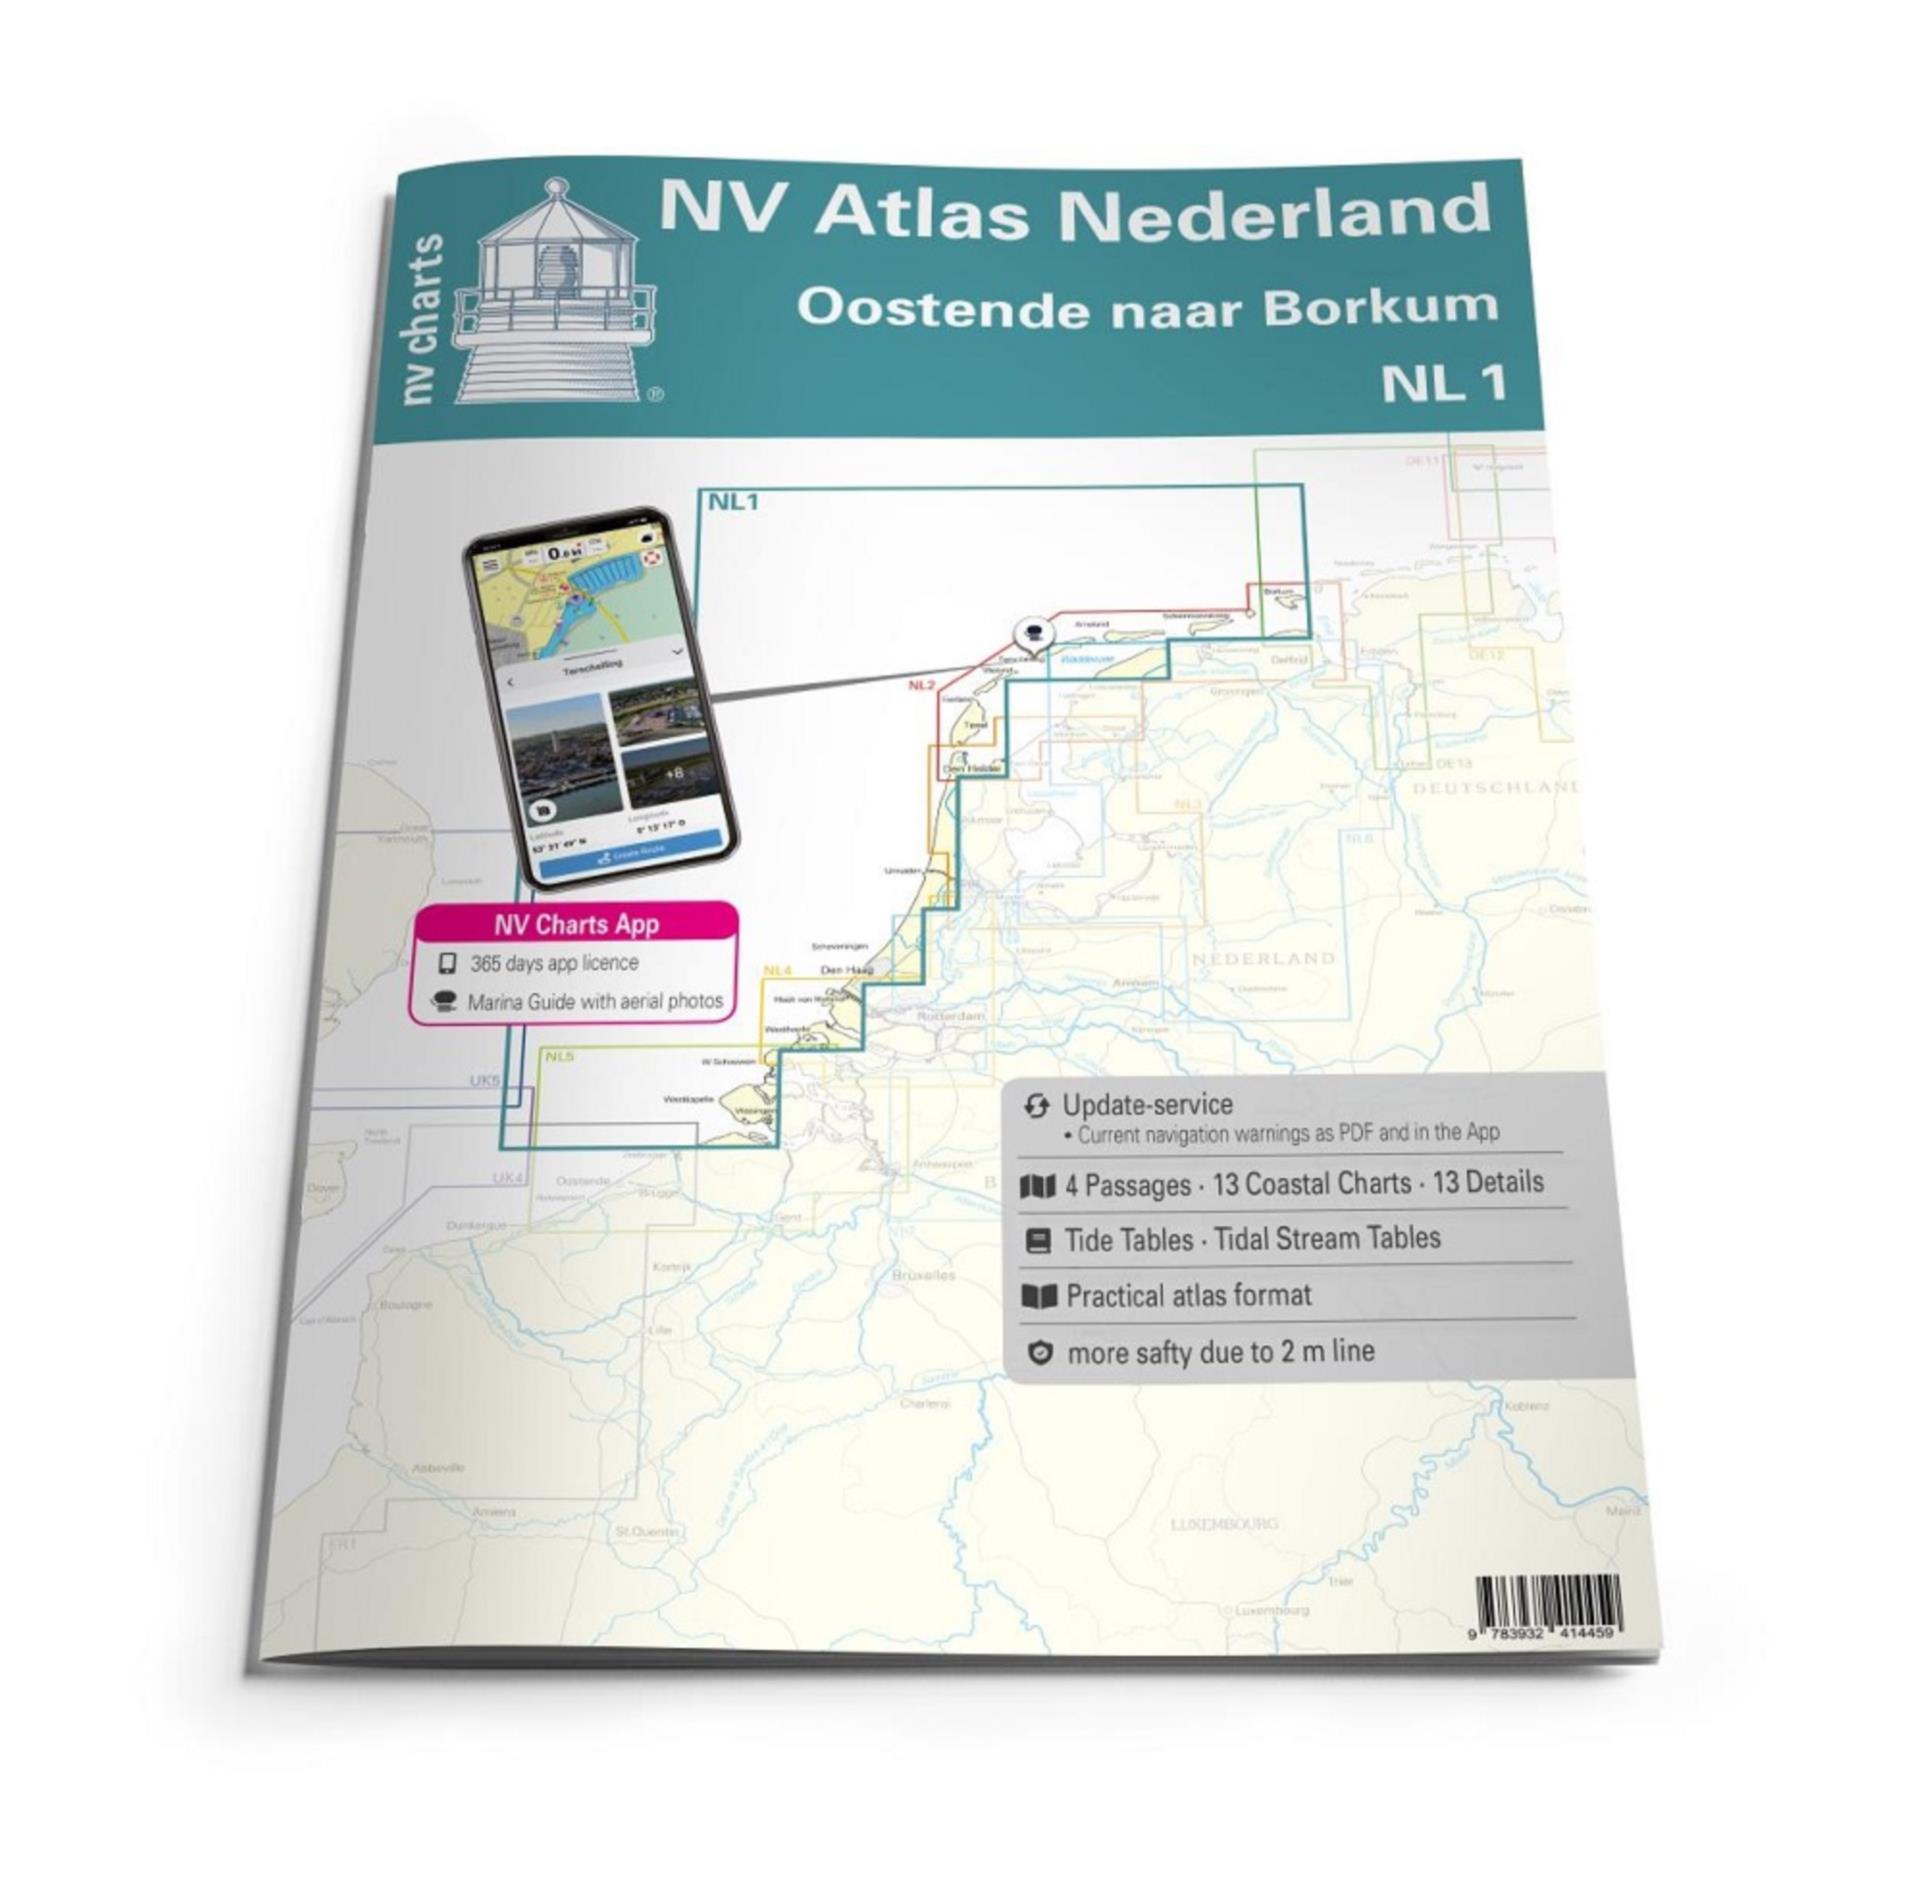 NV Atlas Niederlande NL1 - Borkum naar Oostende